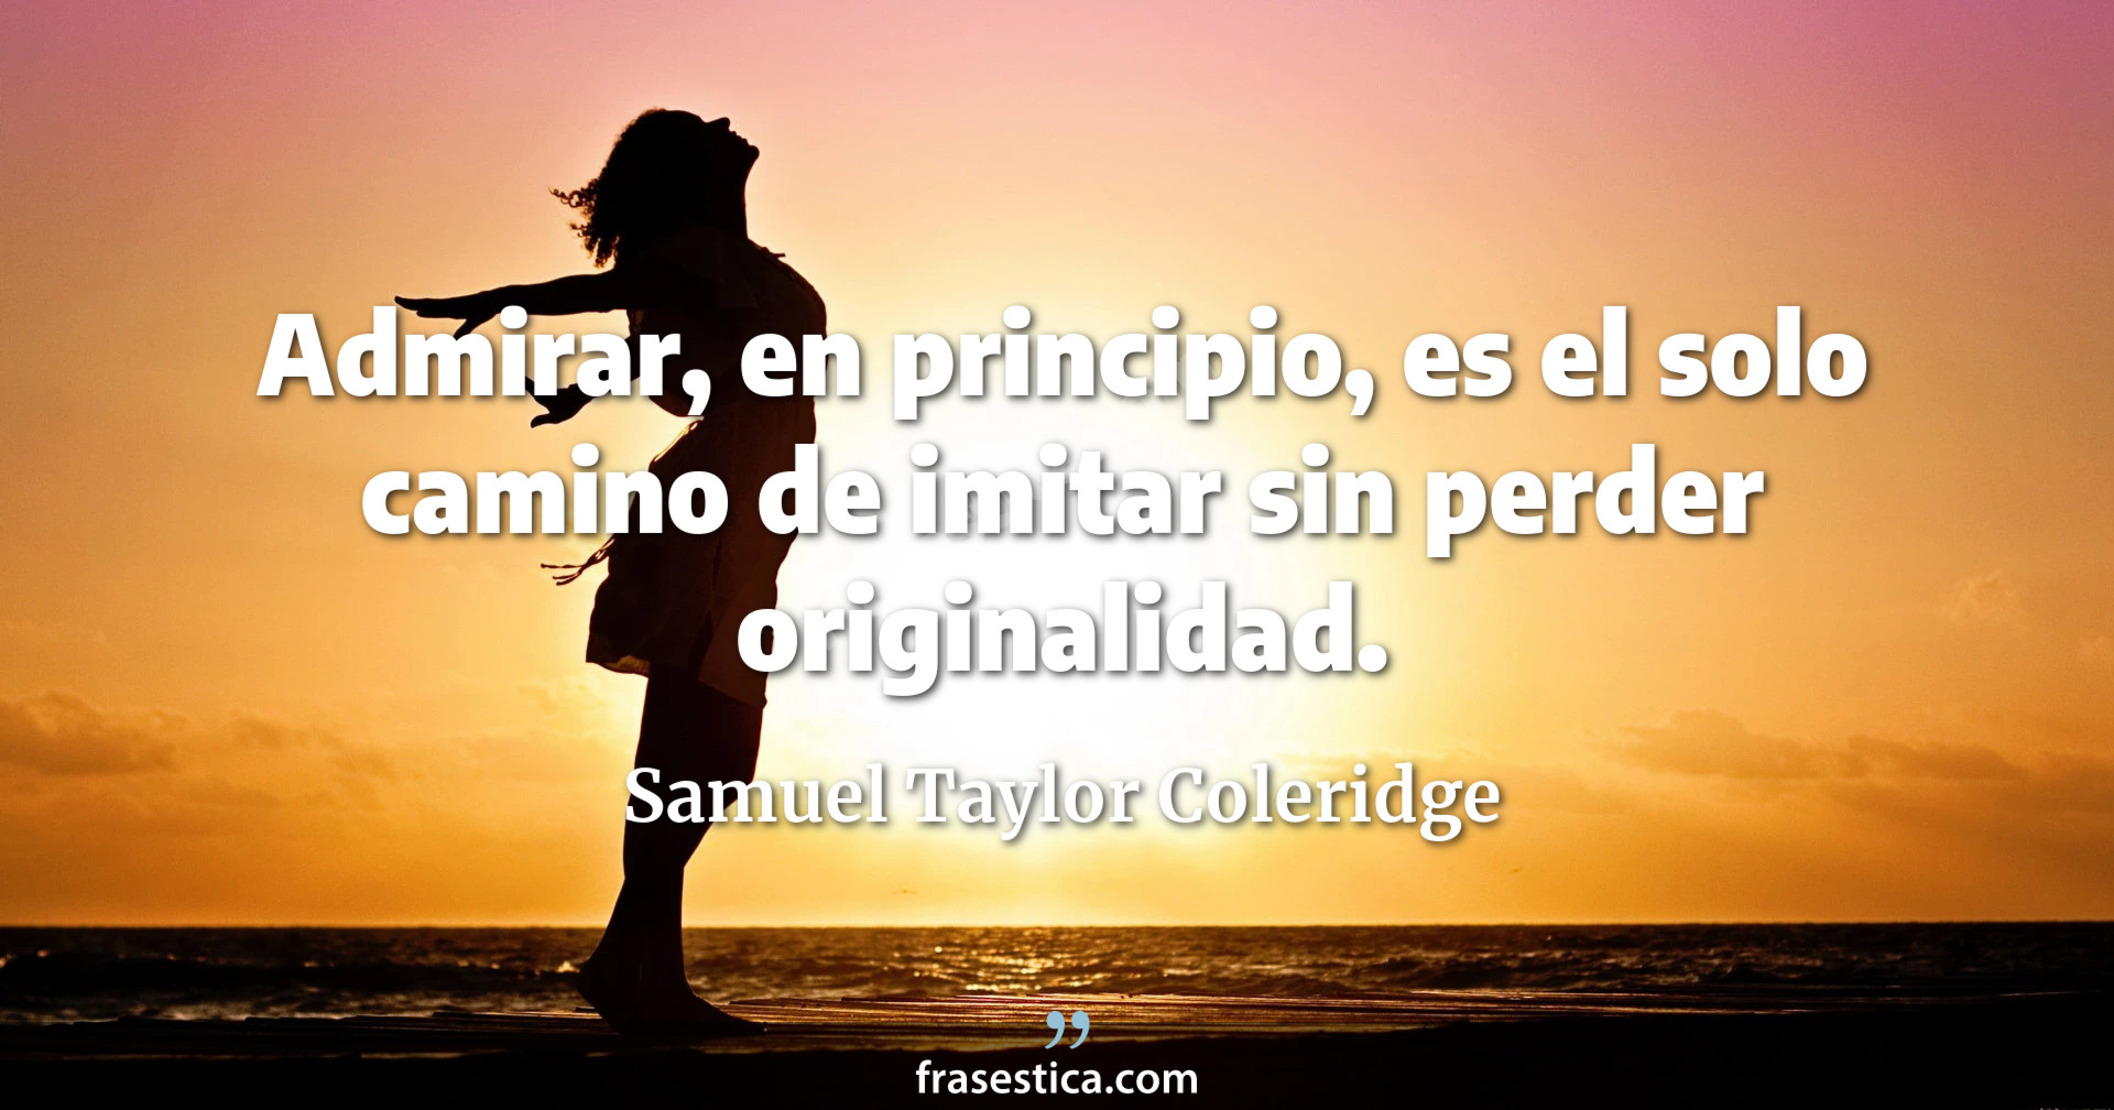 Admirar, en principio, es el solo camino de imitar sin perder originalidad. - Samuel Taylor Coleridge